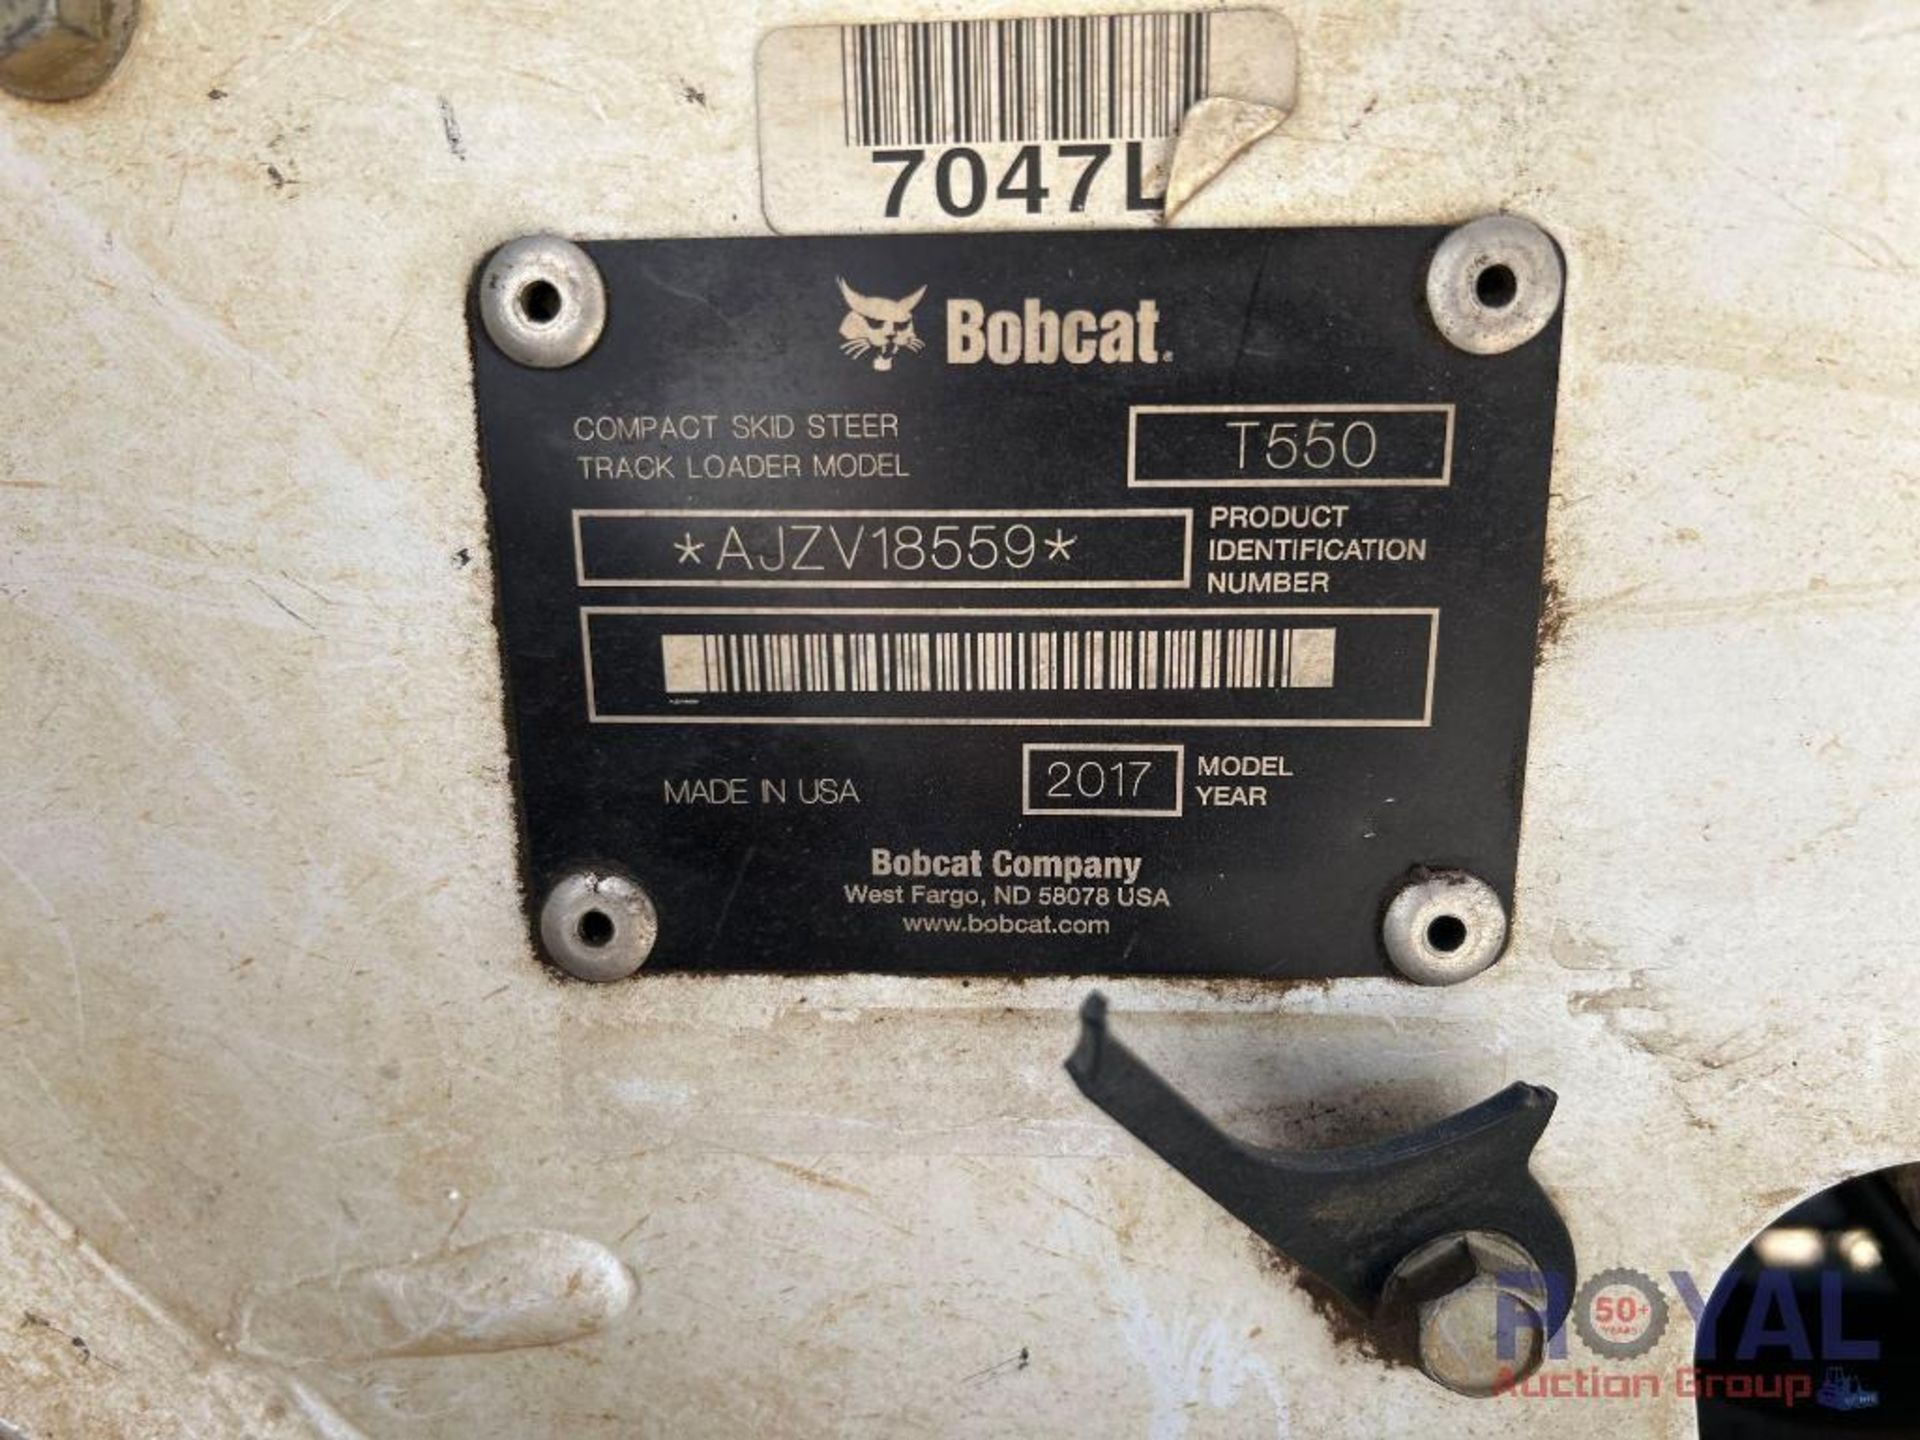 2017 Bobcat T550 Compact Track Loader Skid Steer - Image 5 of 39